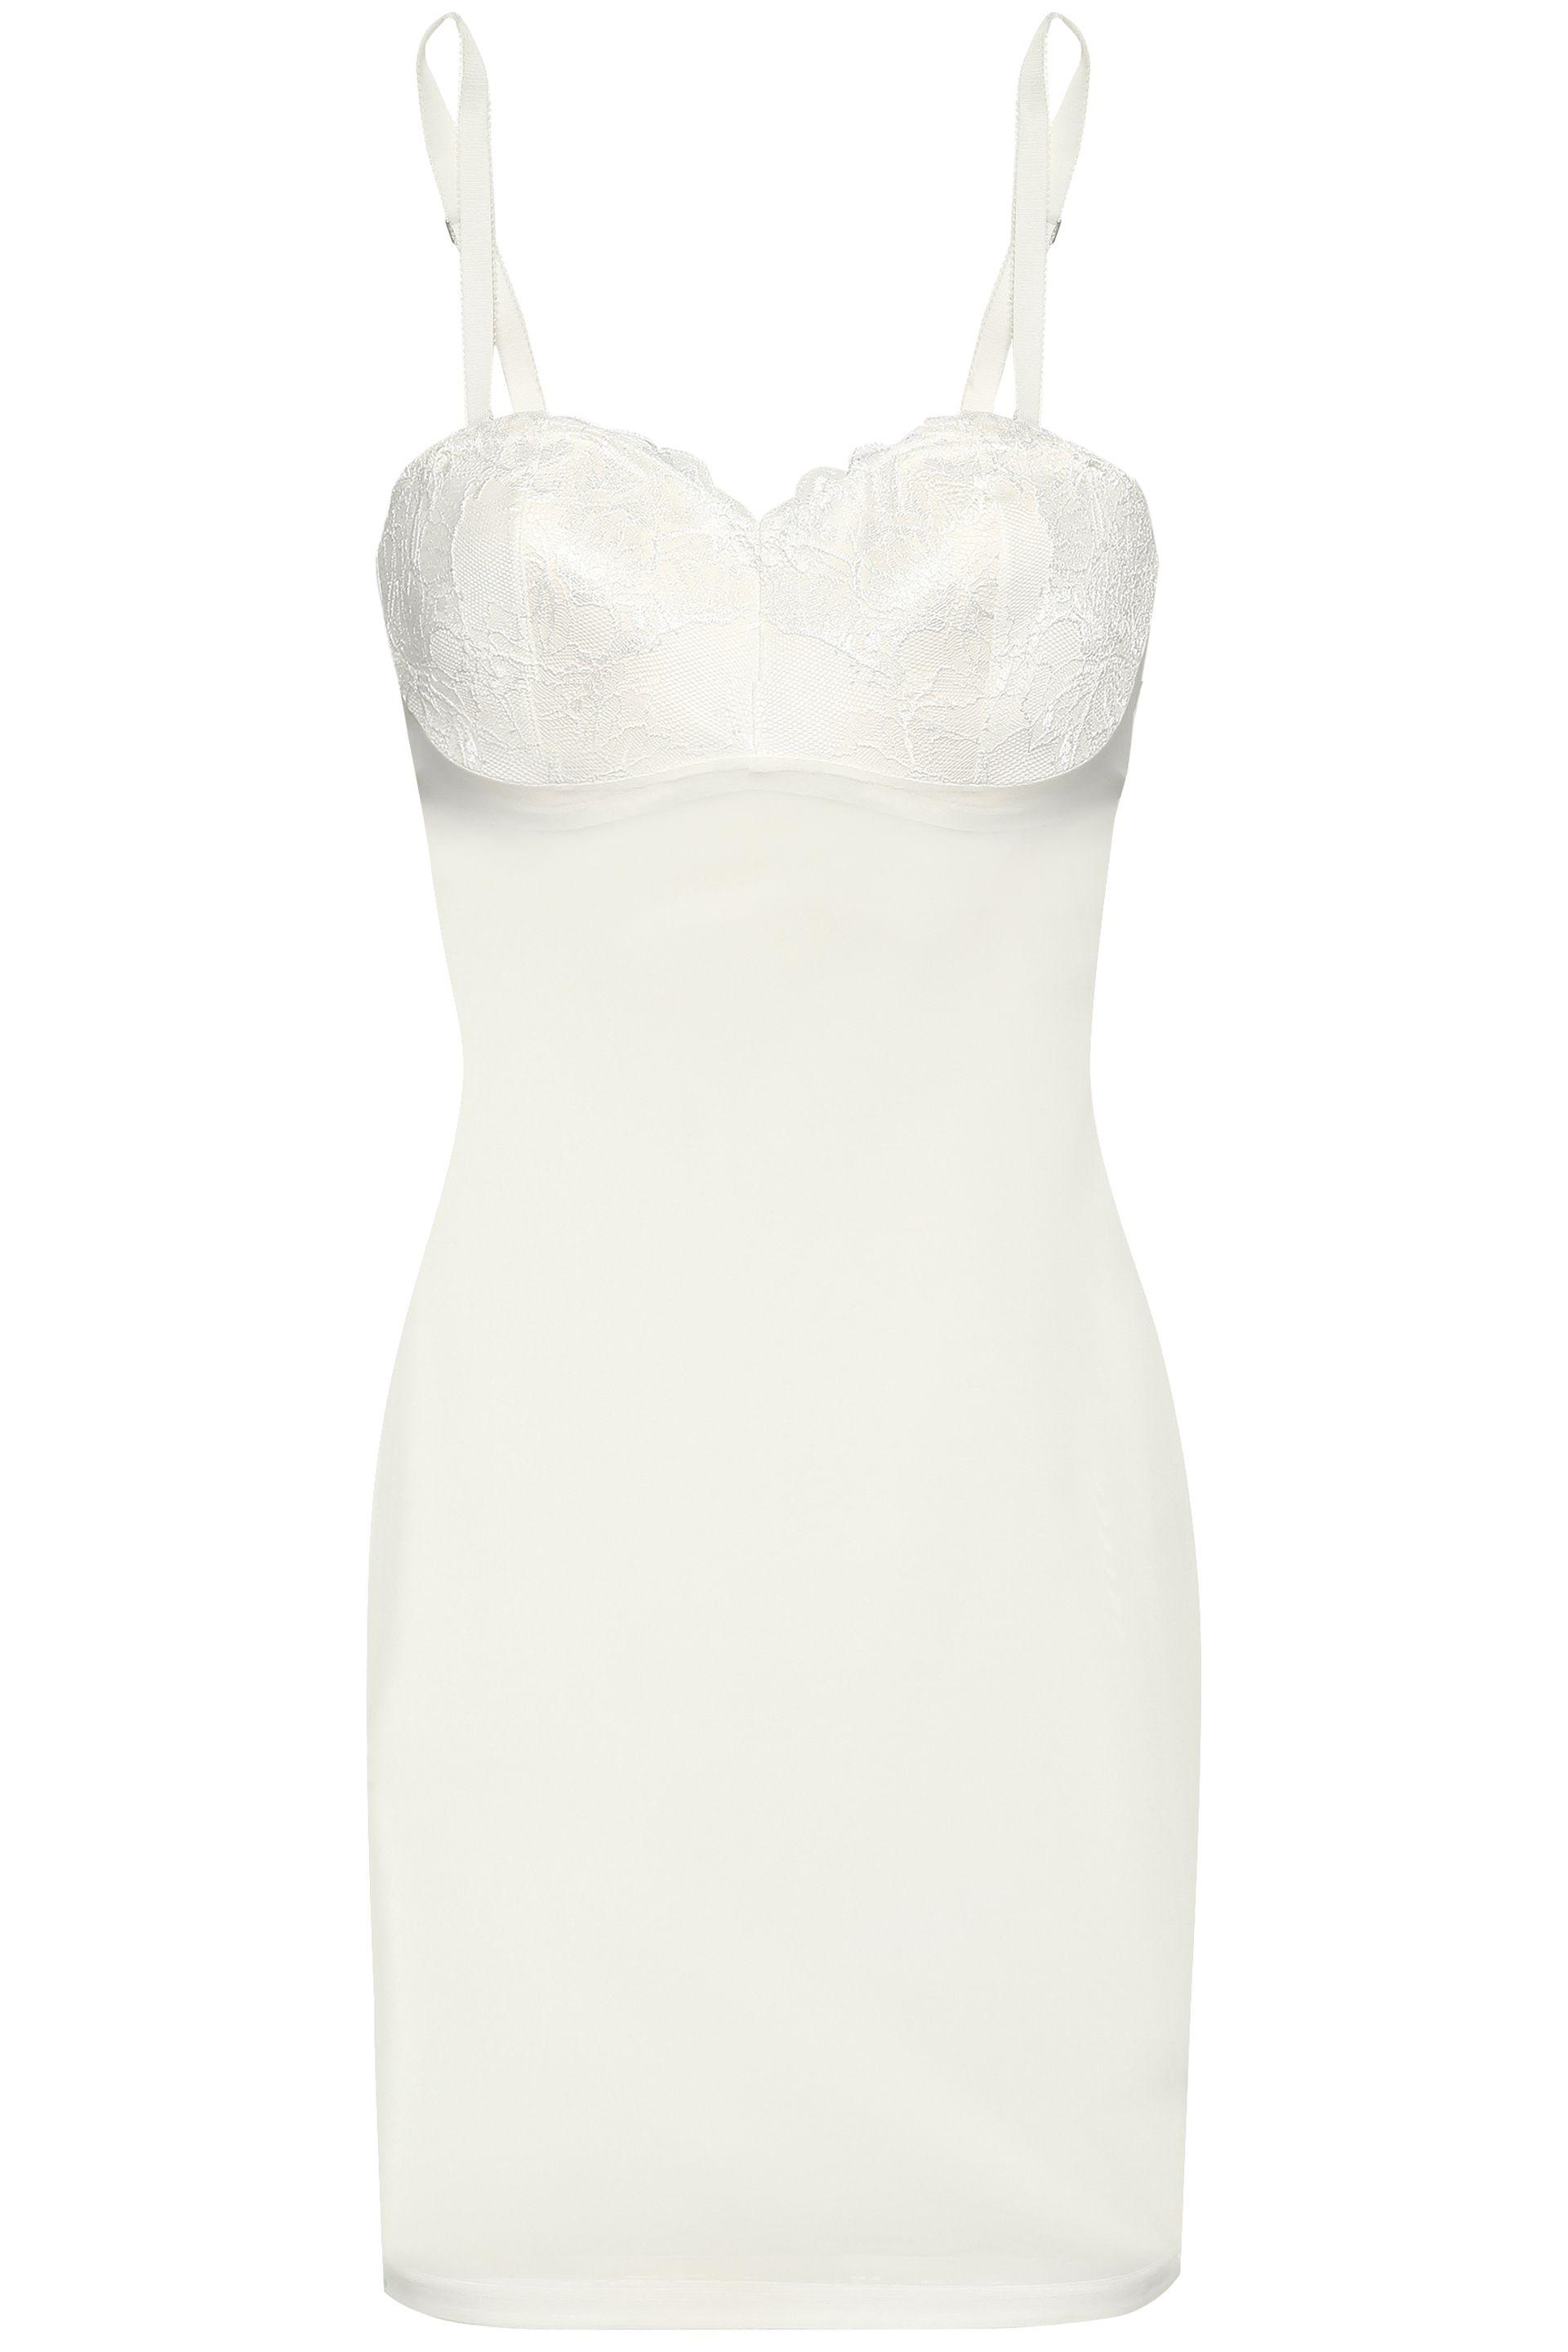 strapless white slip dress